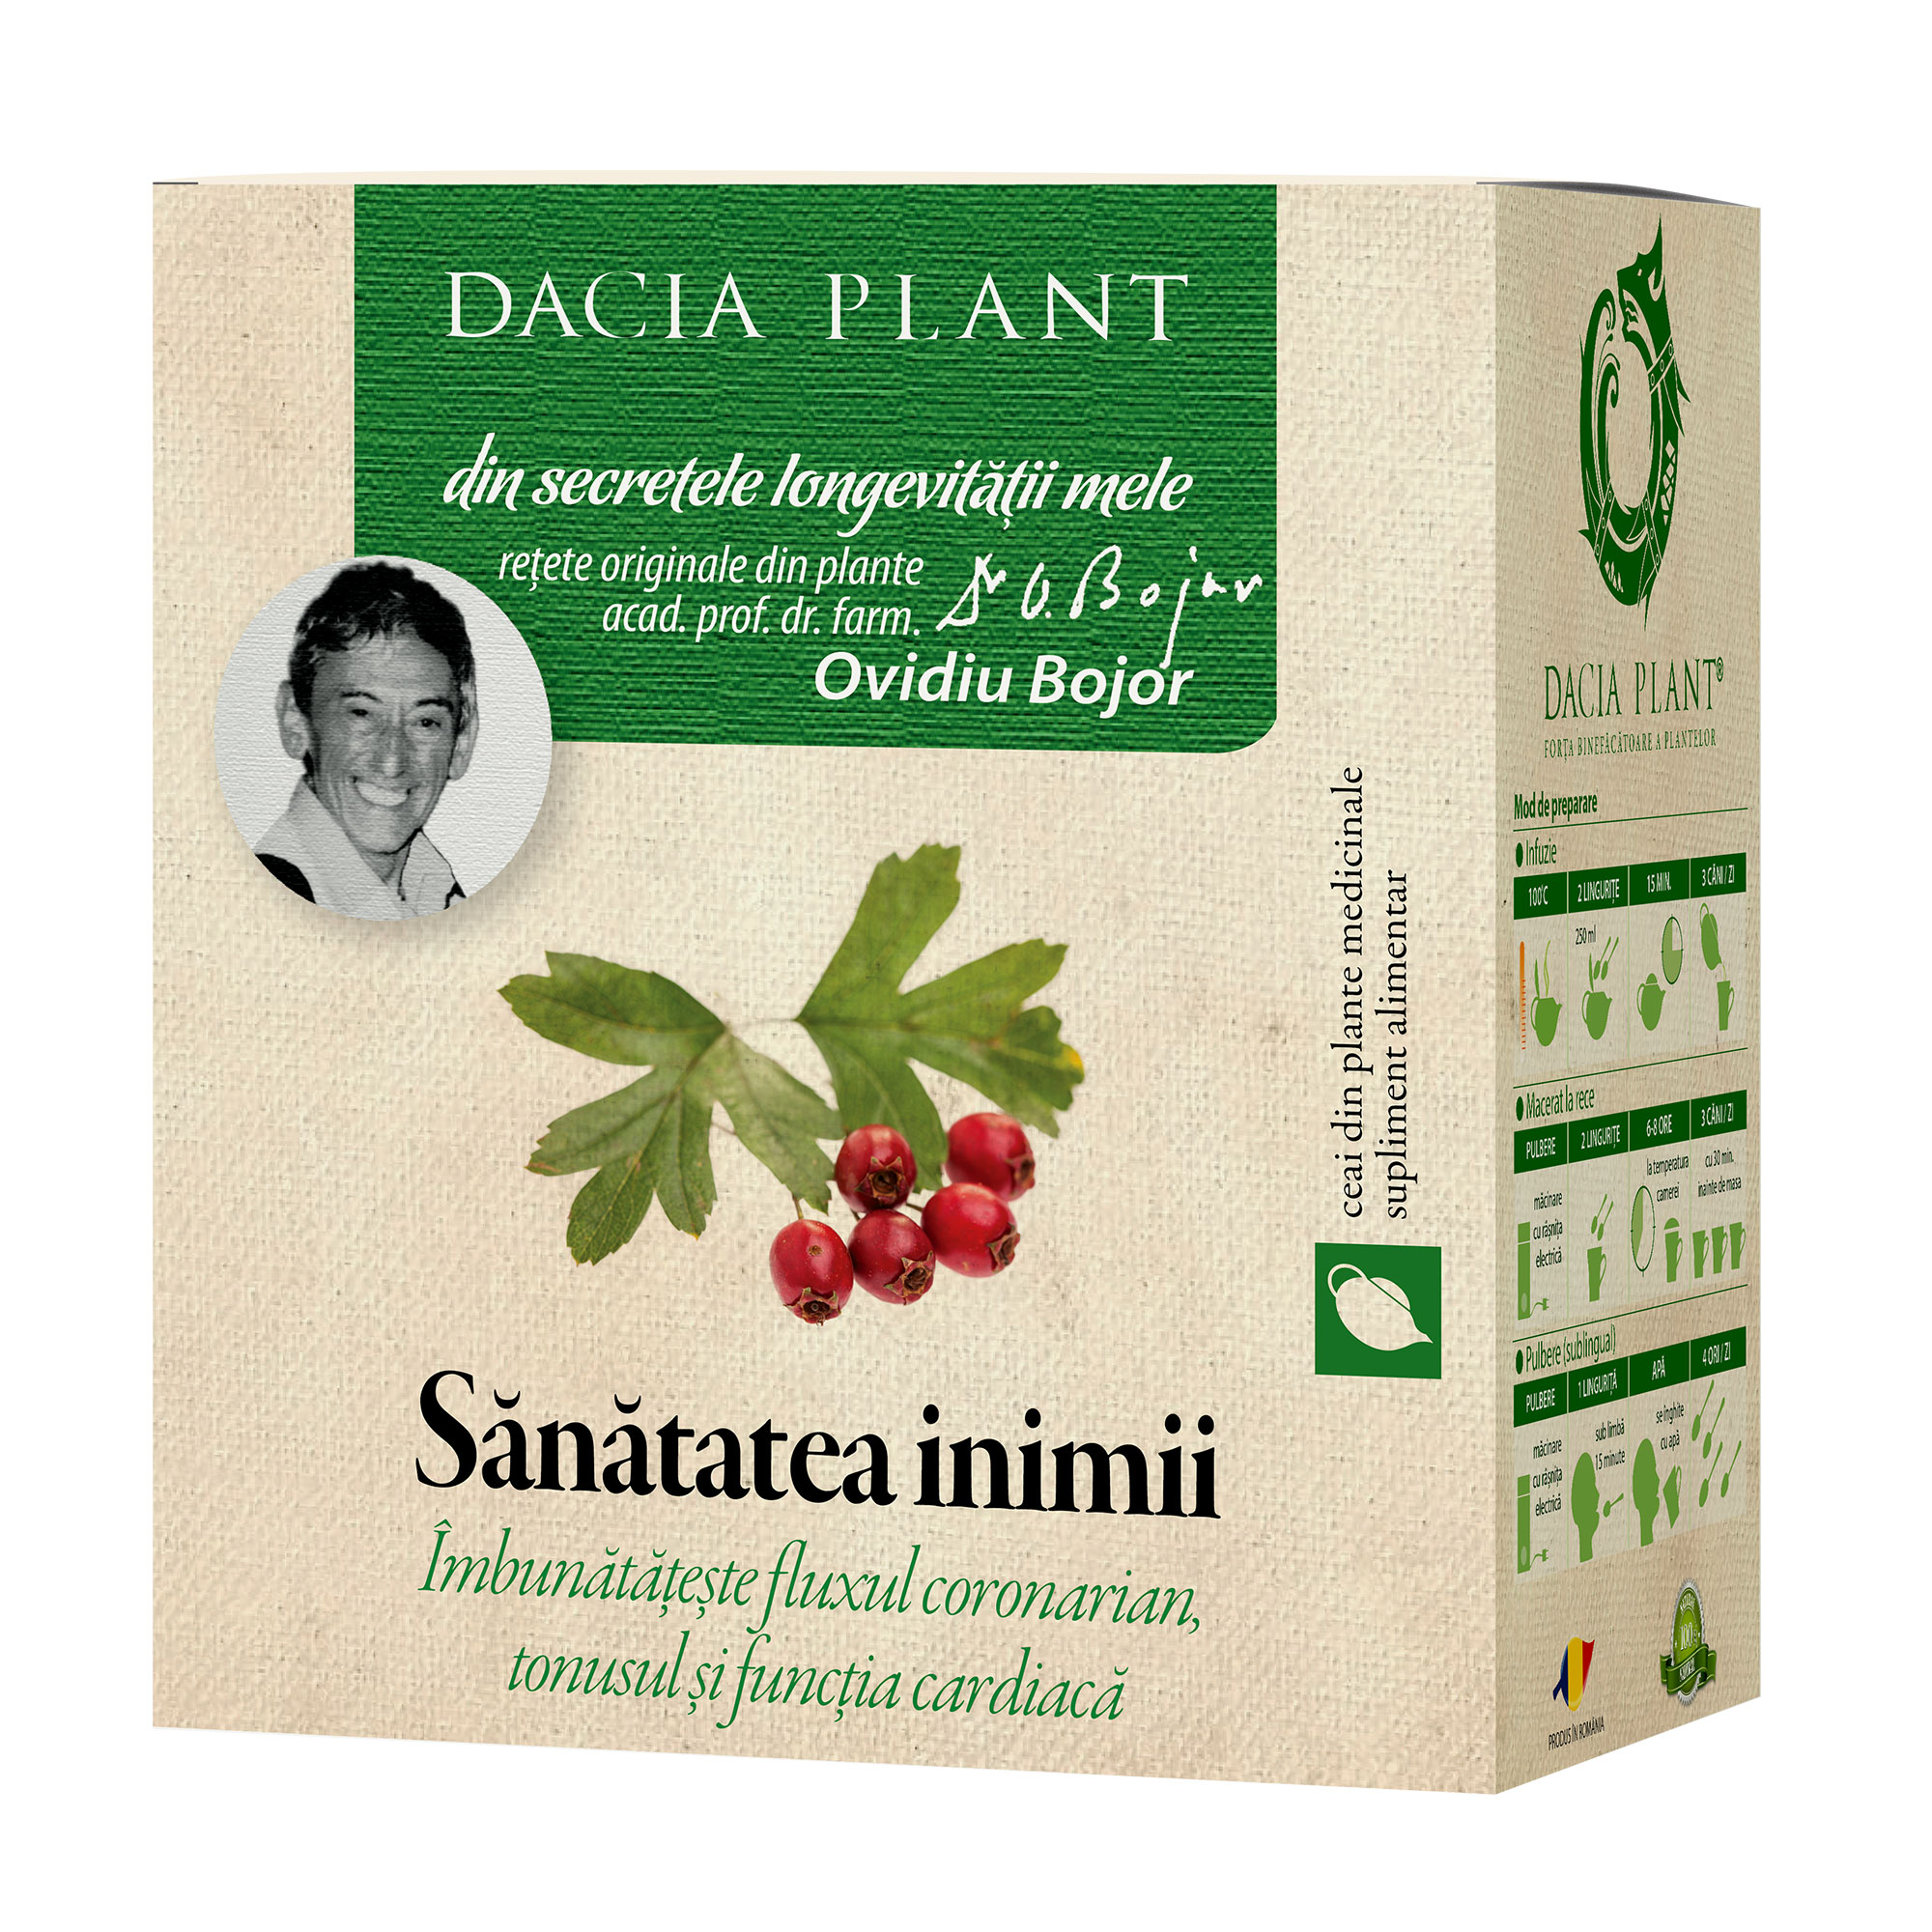 CEAIURI - Ceai din plante medicinale Sănătatea inimii, 50 g, Dacia Plant, sinapis.ro